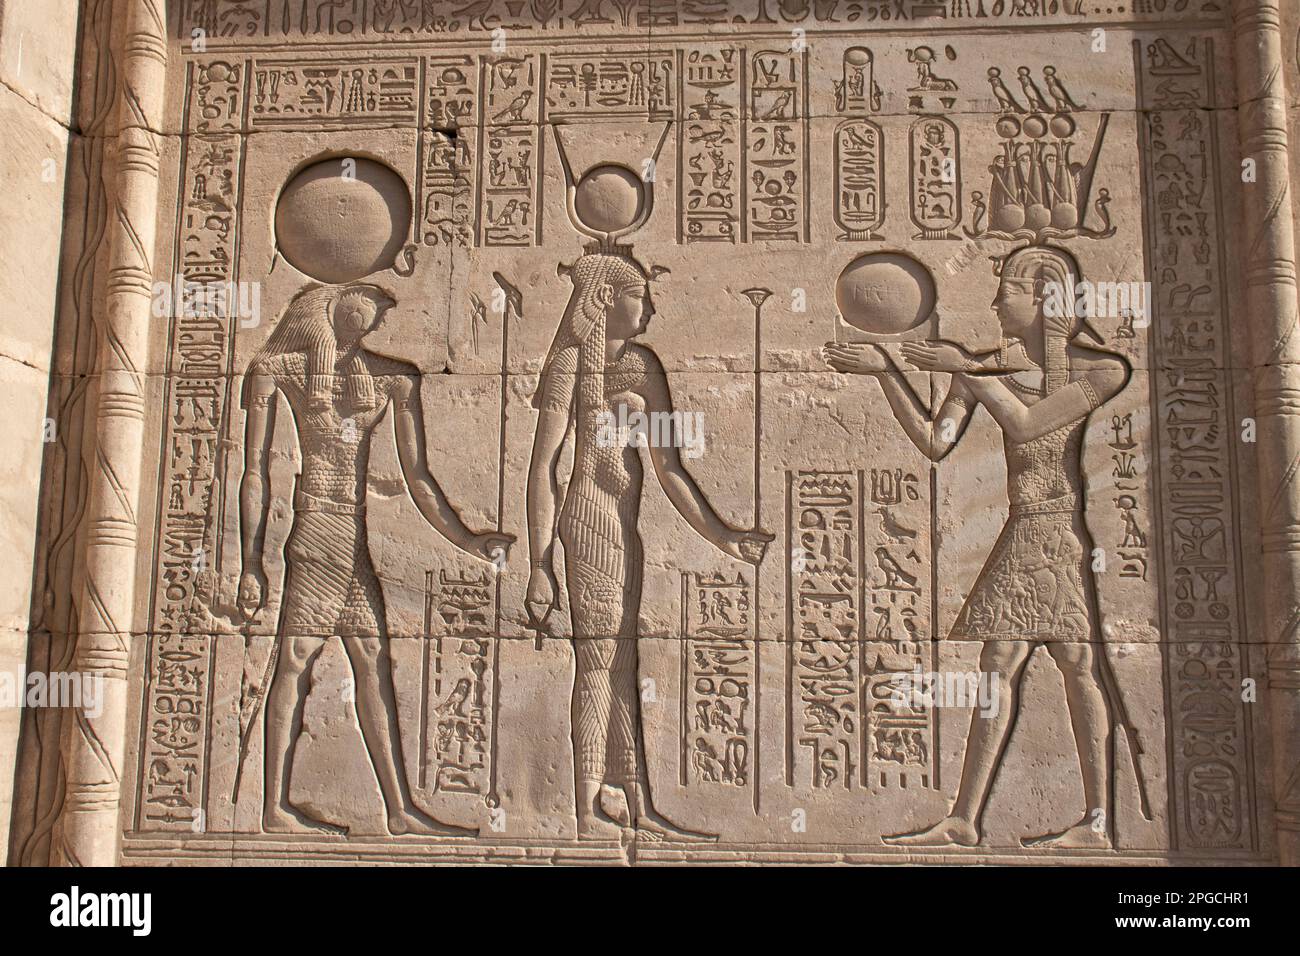 Ptolemy XII. Auletes by DarkeniusStorm2 on DeviantArt